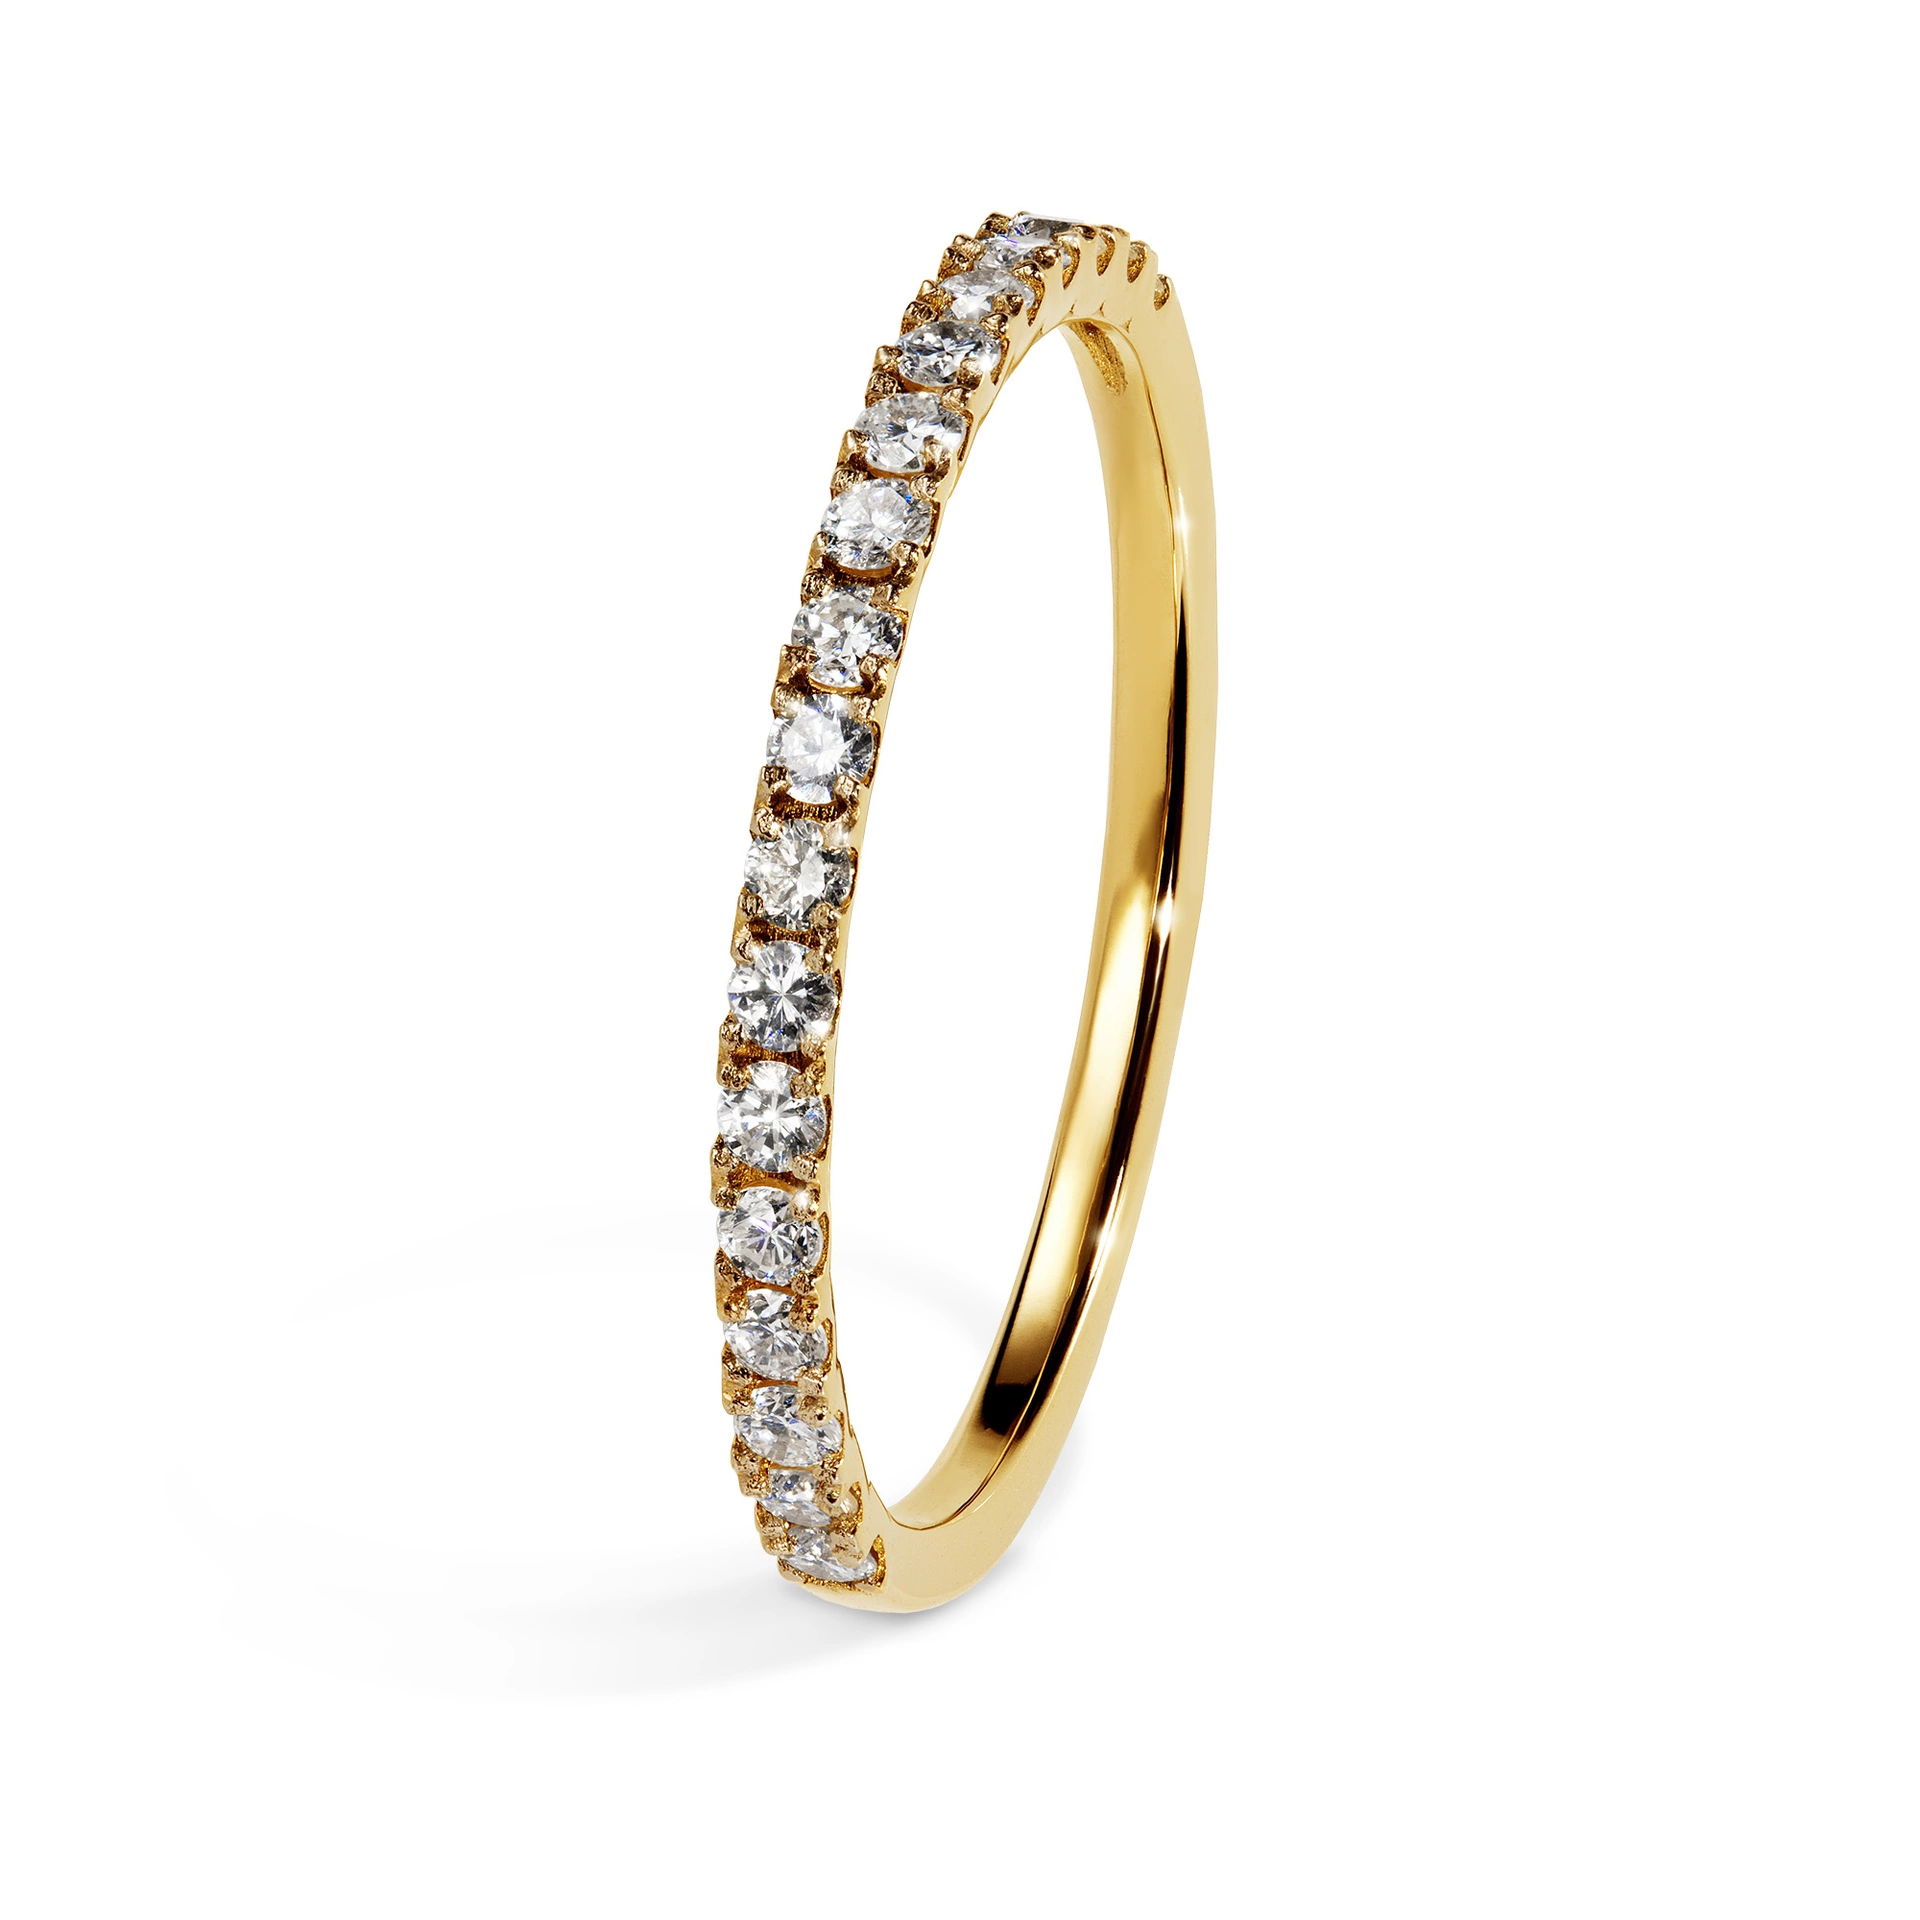 Obrączka ślubna Rosie 15-30 dni, Diamenty naturalne, Diamenty laboratoryjne, Żółte złoto, 2 mm, 1,5mm